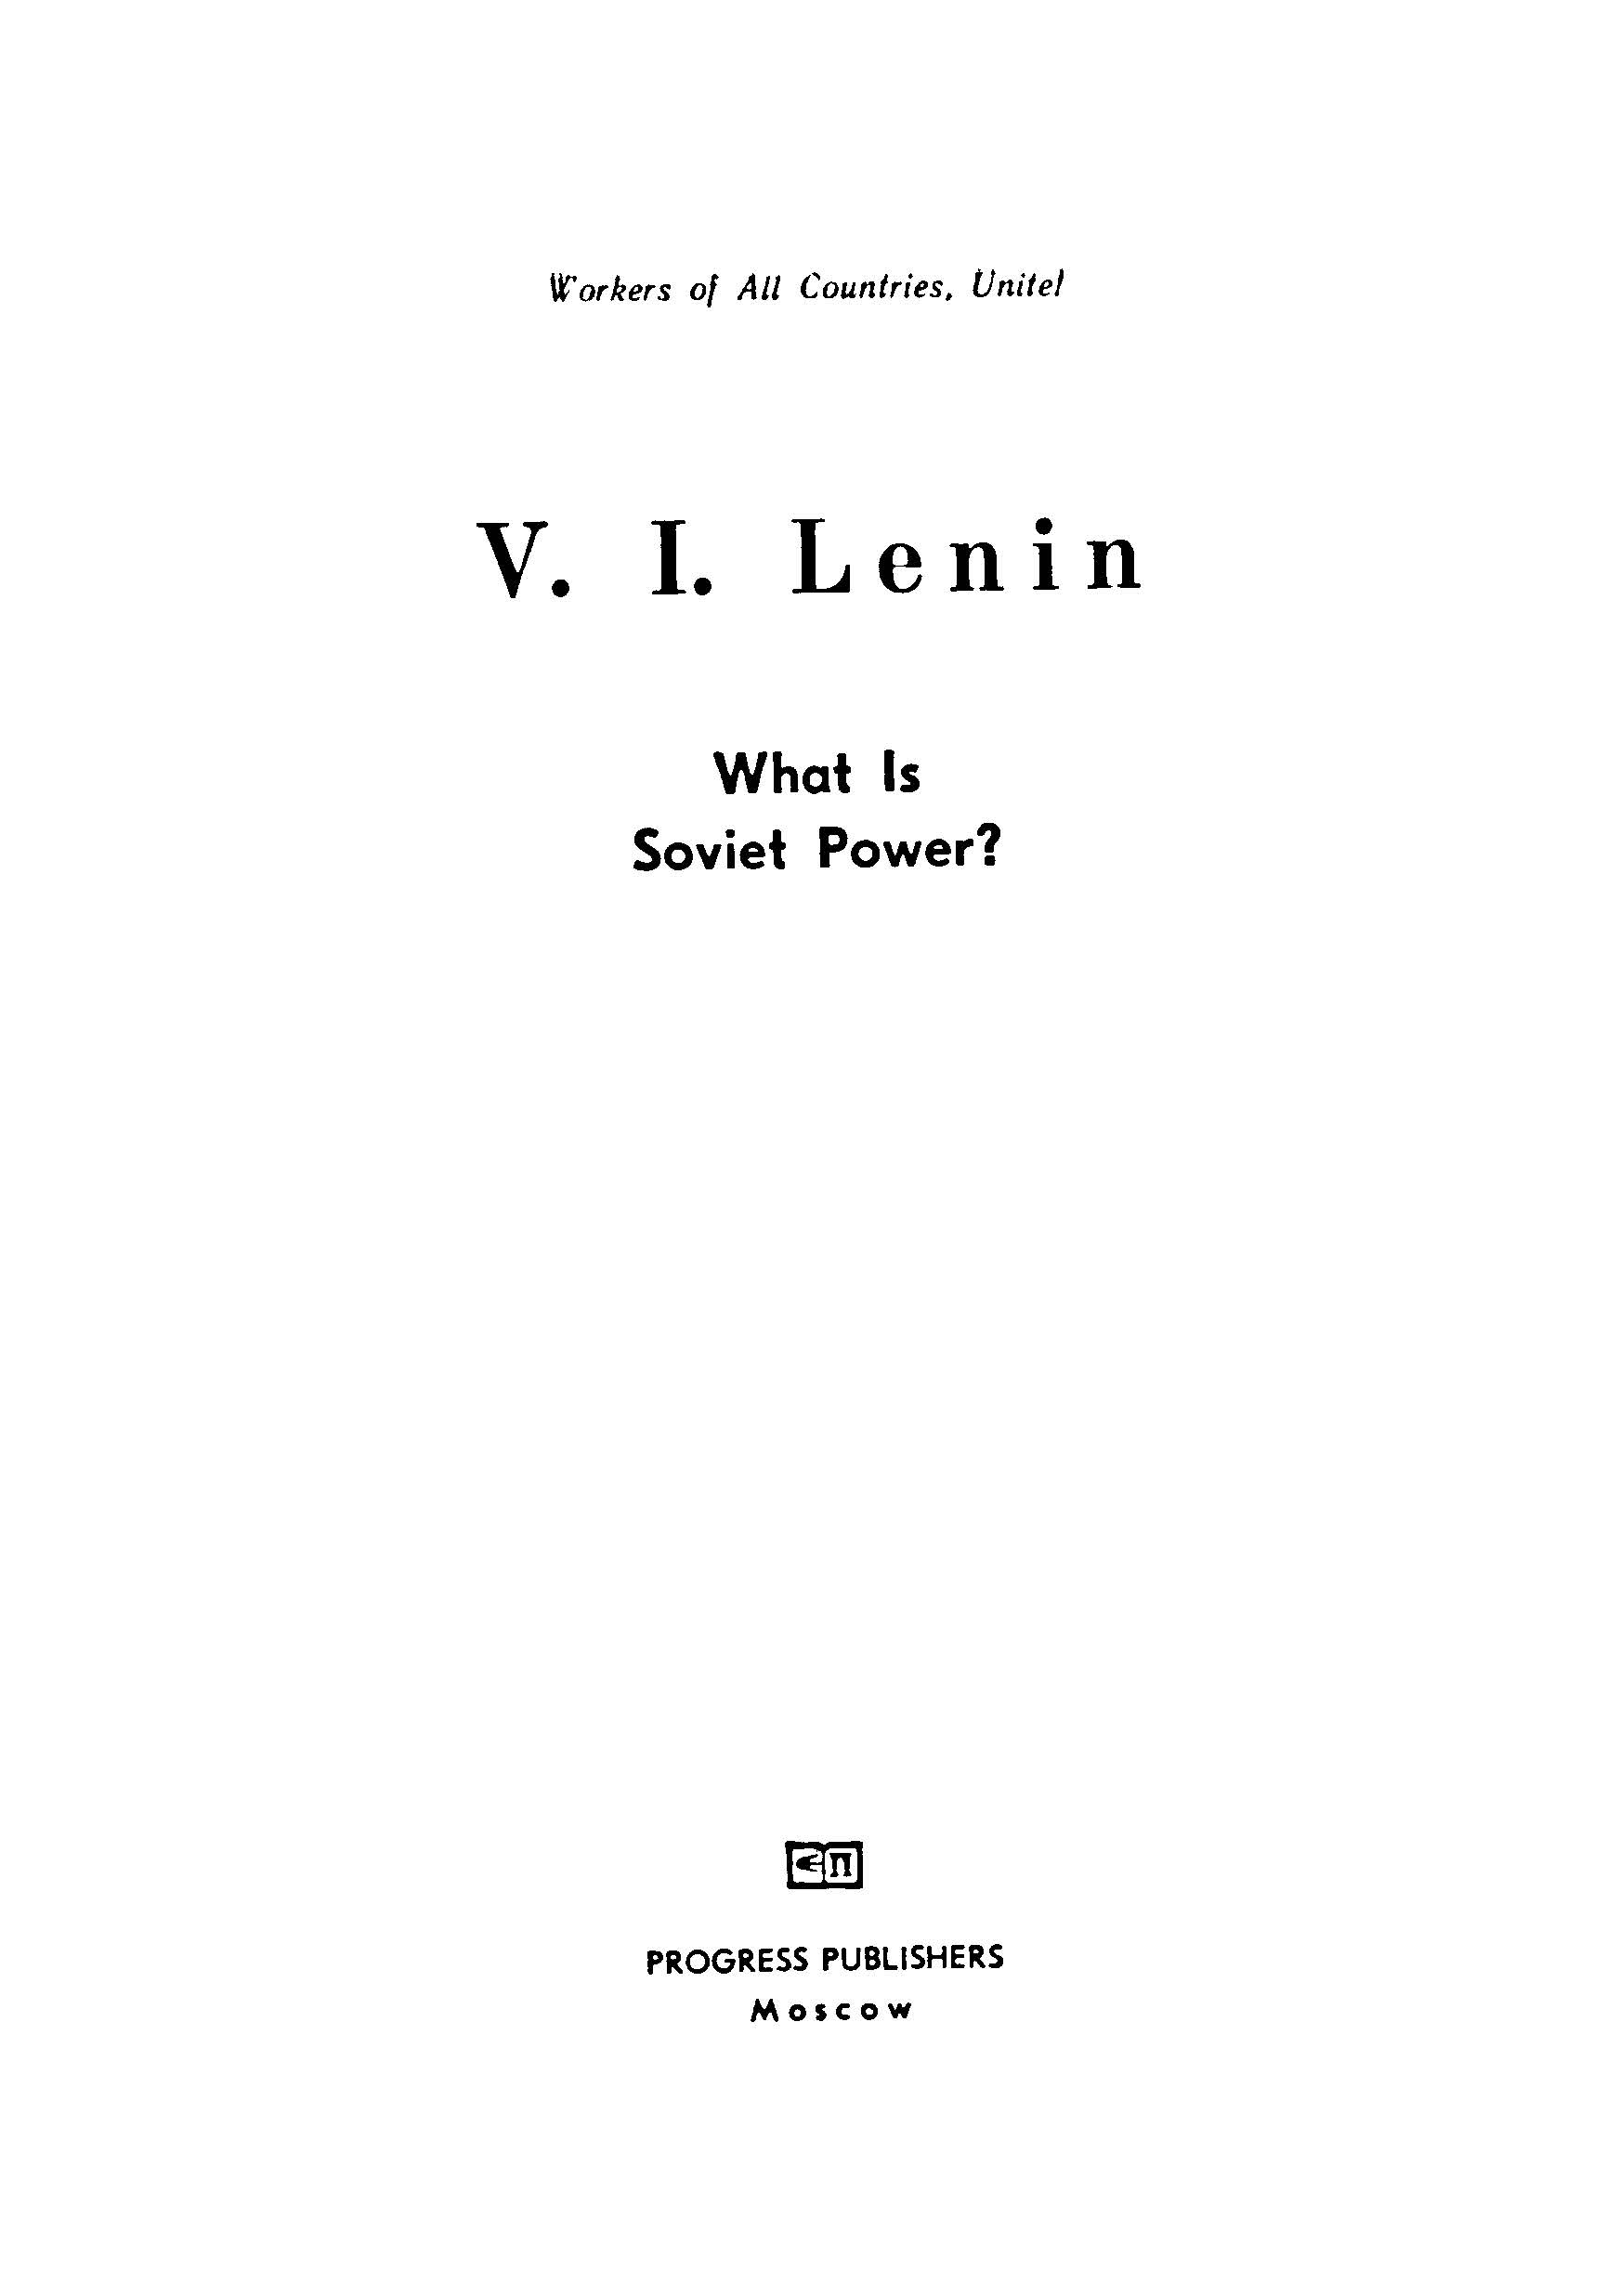 V.L.Lenin what is soviet power?